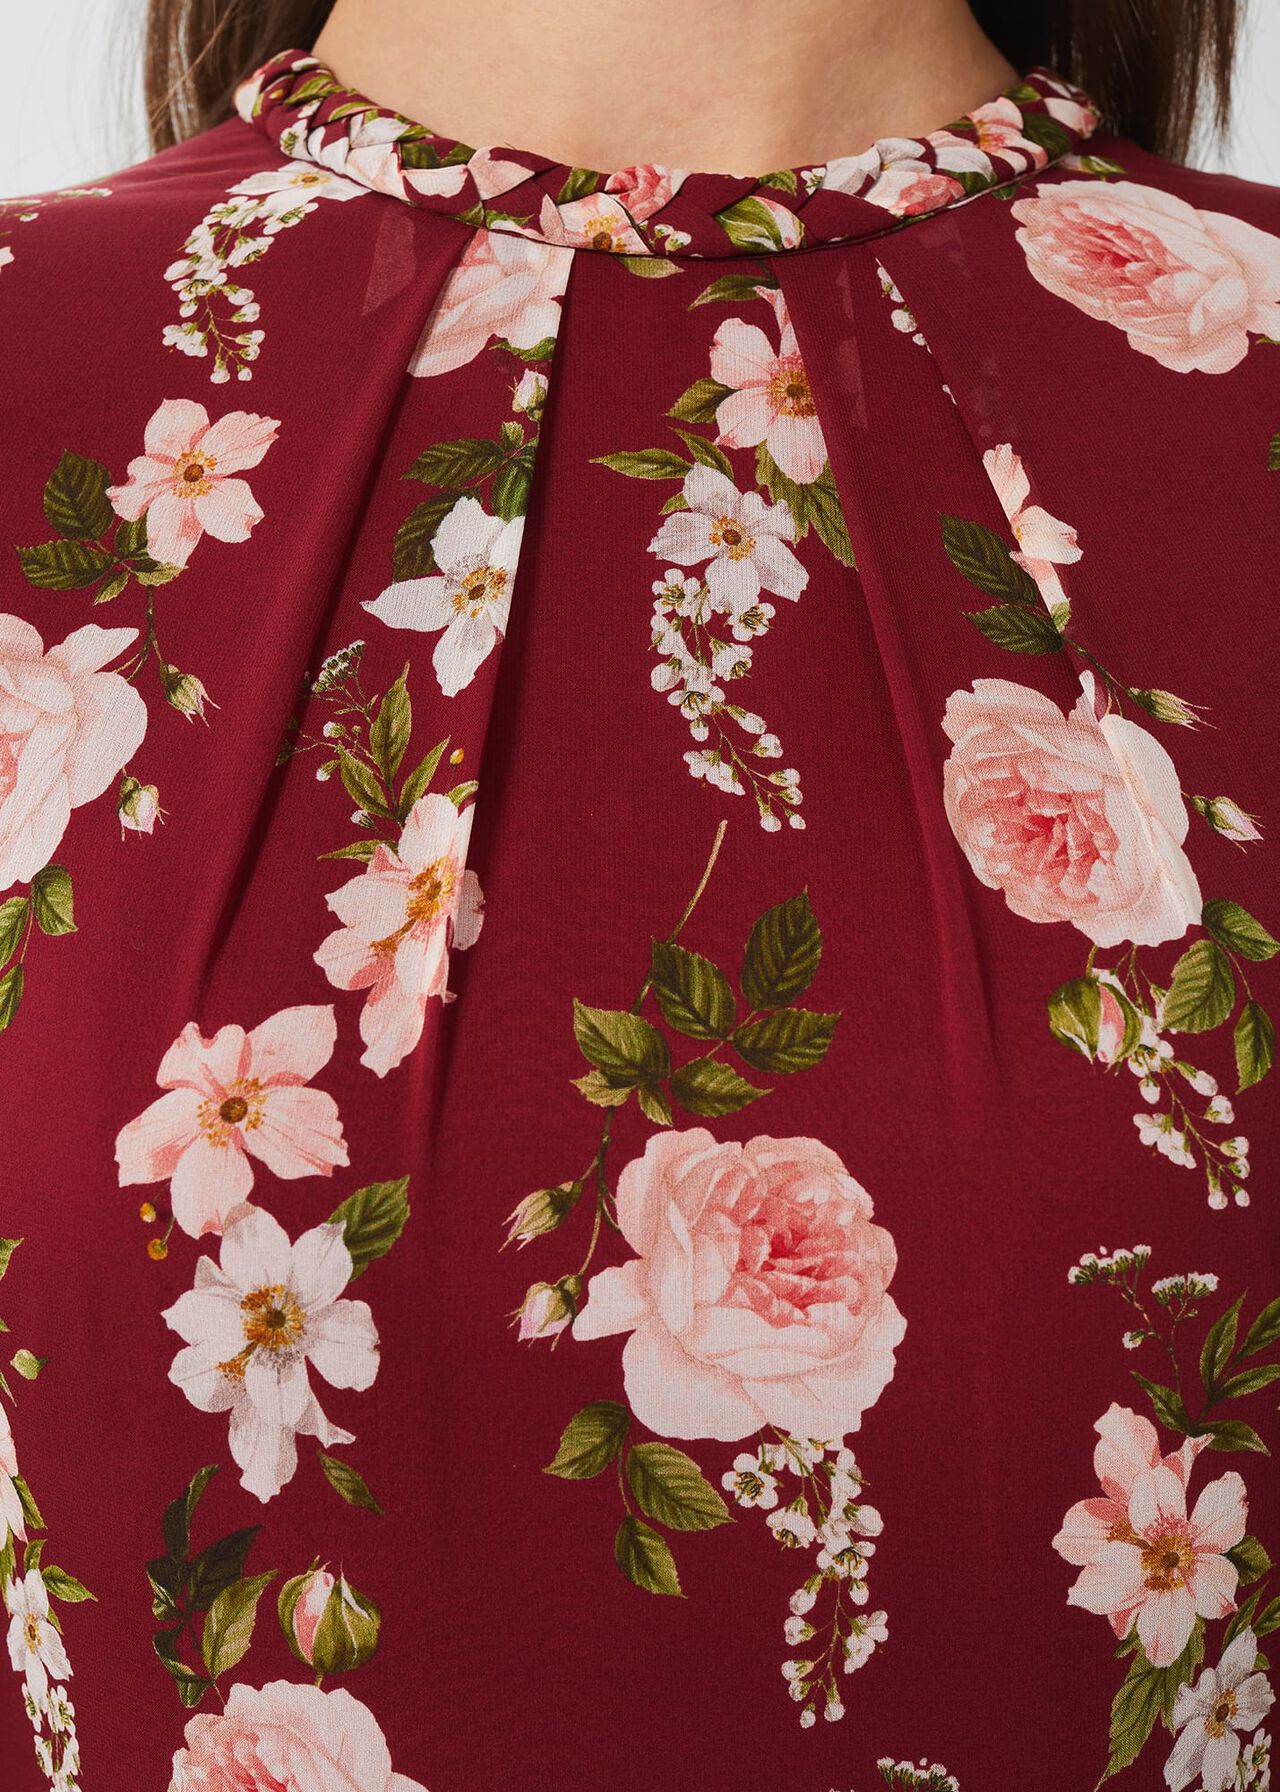 Rosabelle Silk Floral Dress, Burgundy Multi, hi-res